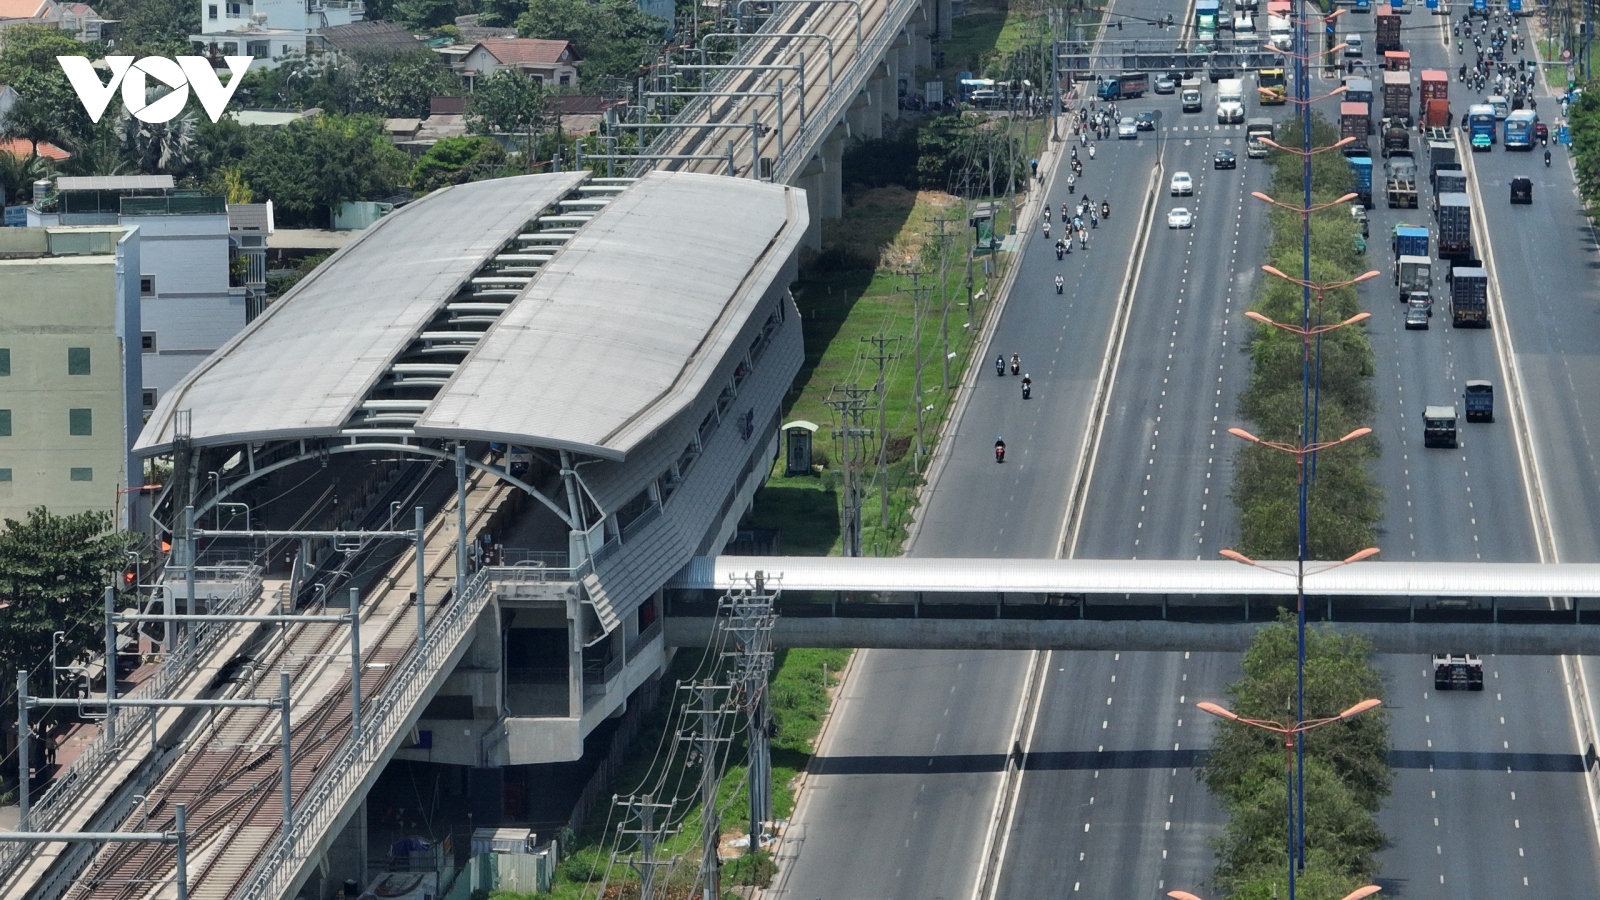 Hoàn thành việc xây dựng 9 cầu bộ hành nhà ga metro 1 vào tháng 9